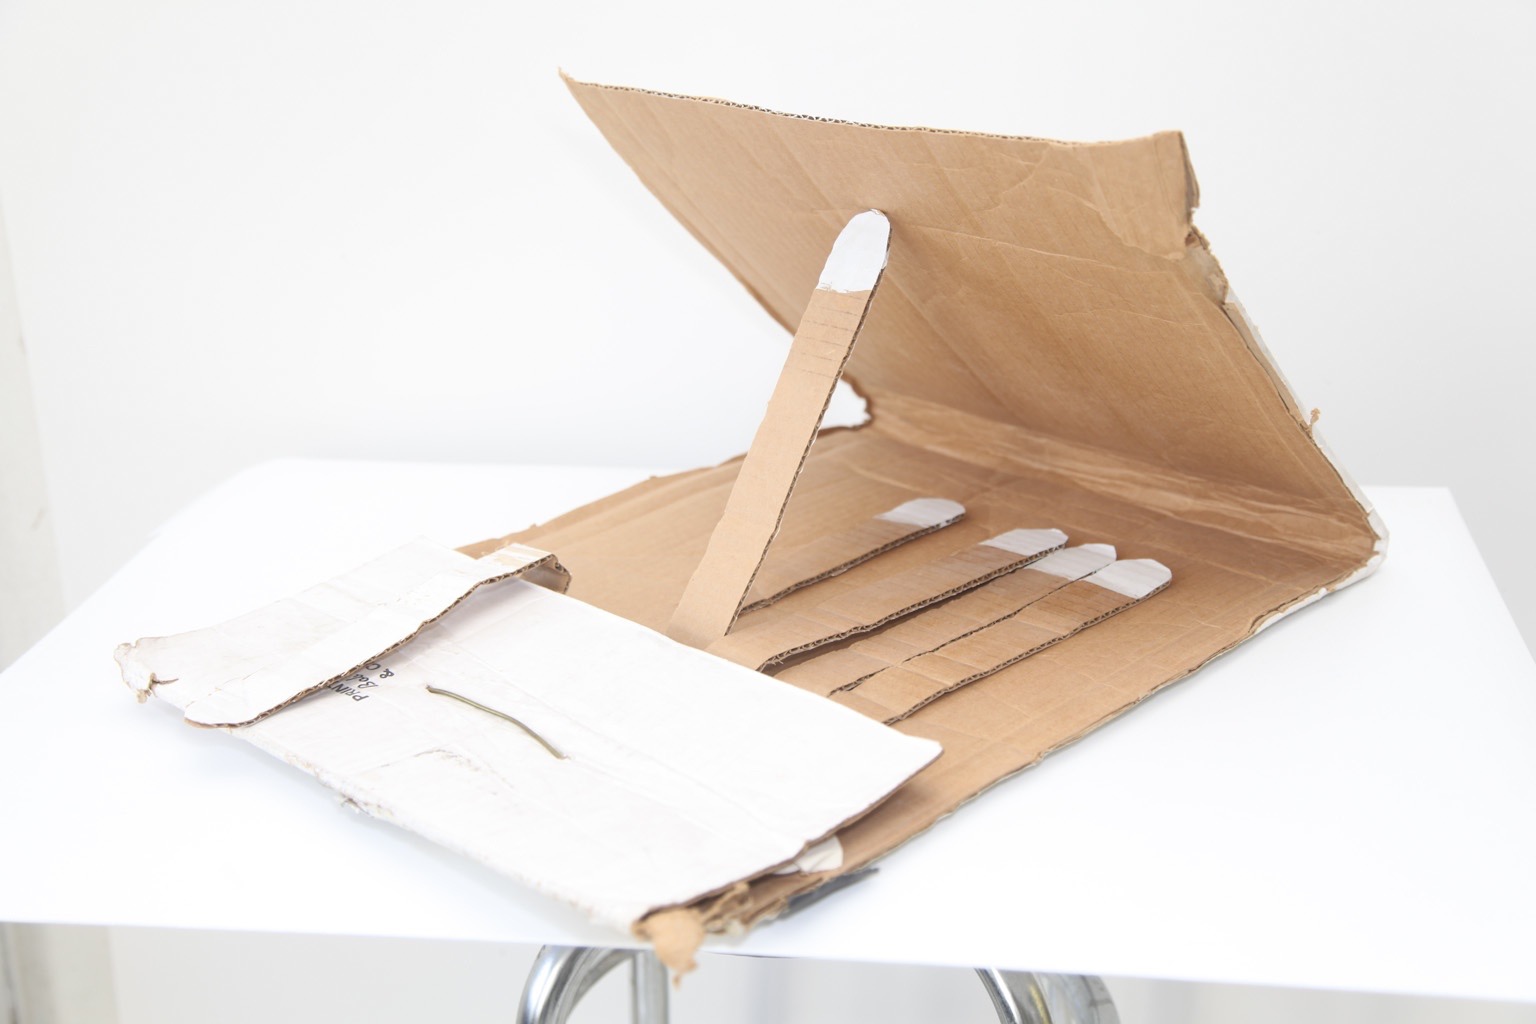 T De Long, *Matches*, 2007. Cardboard, coat hanger, acrylic paint, gaffer tape